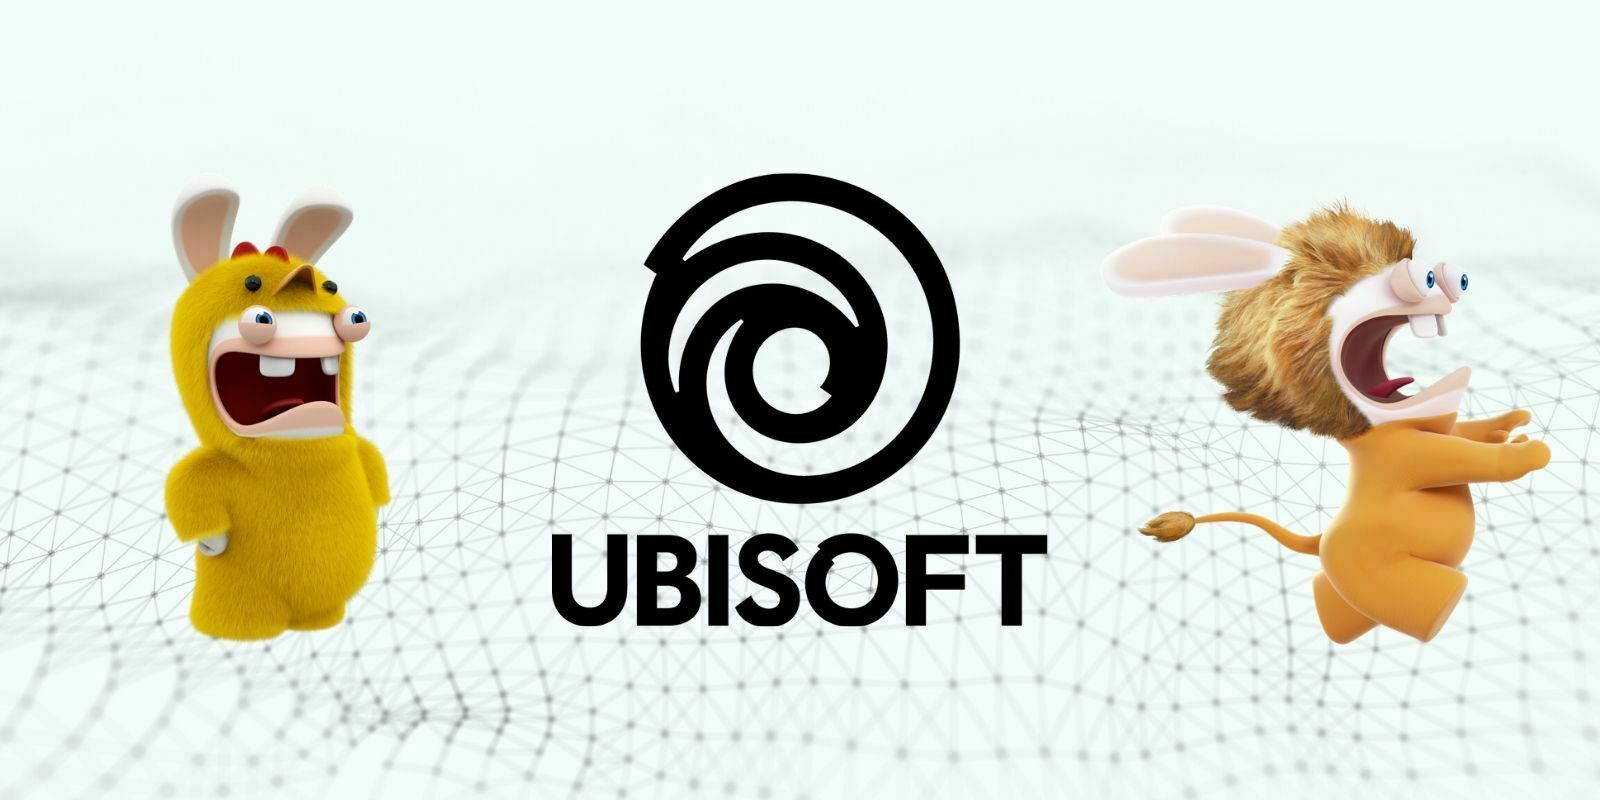 Ubisoft tokénise les Lapins Crétins sur la blockchain au profit de l'UNICEF